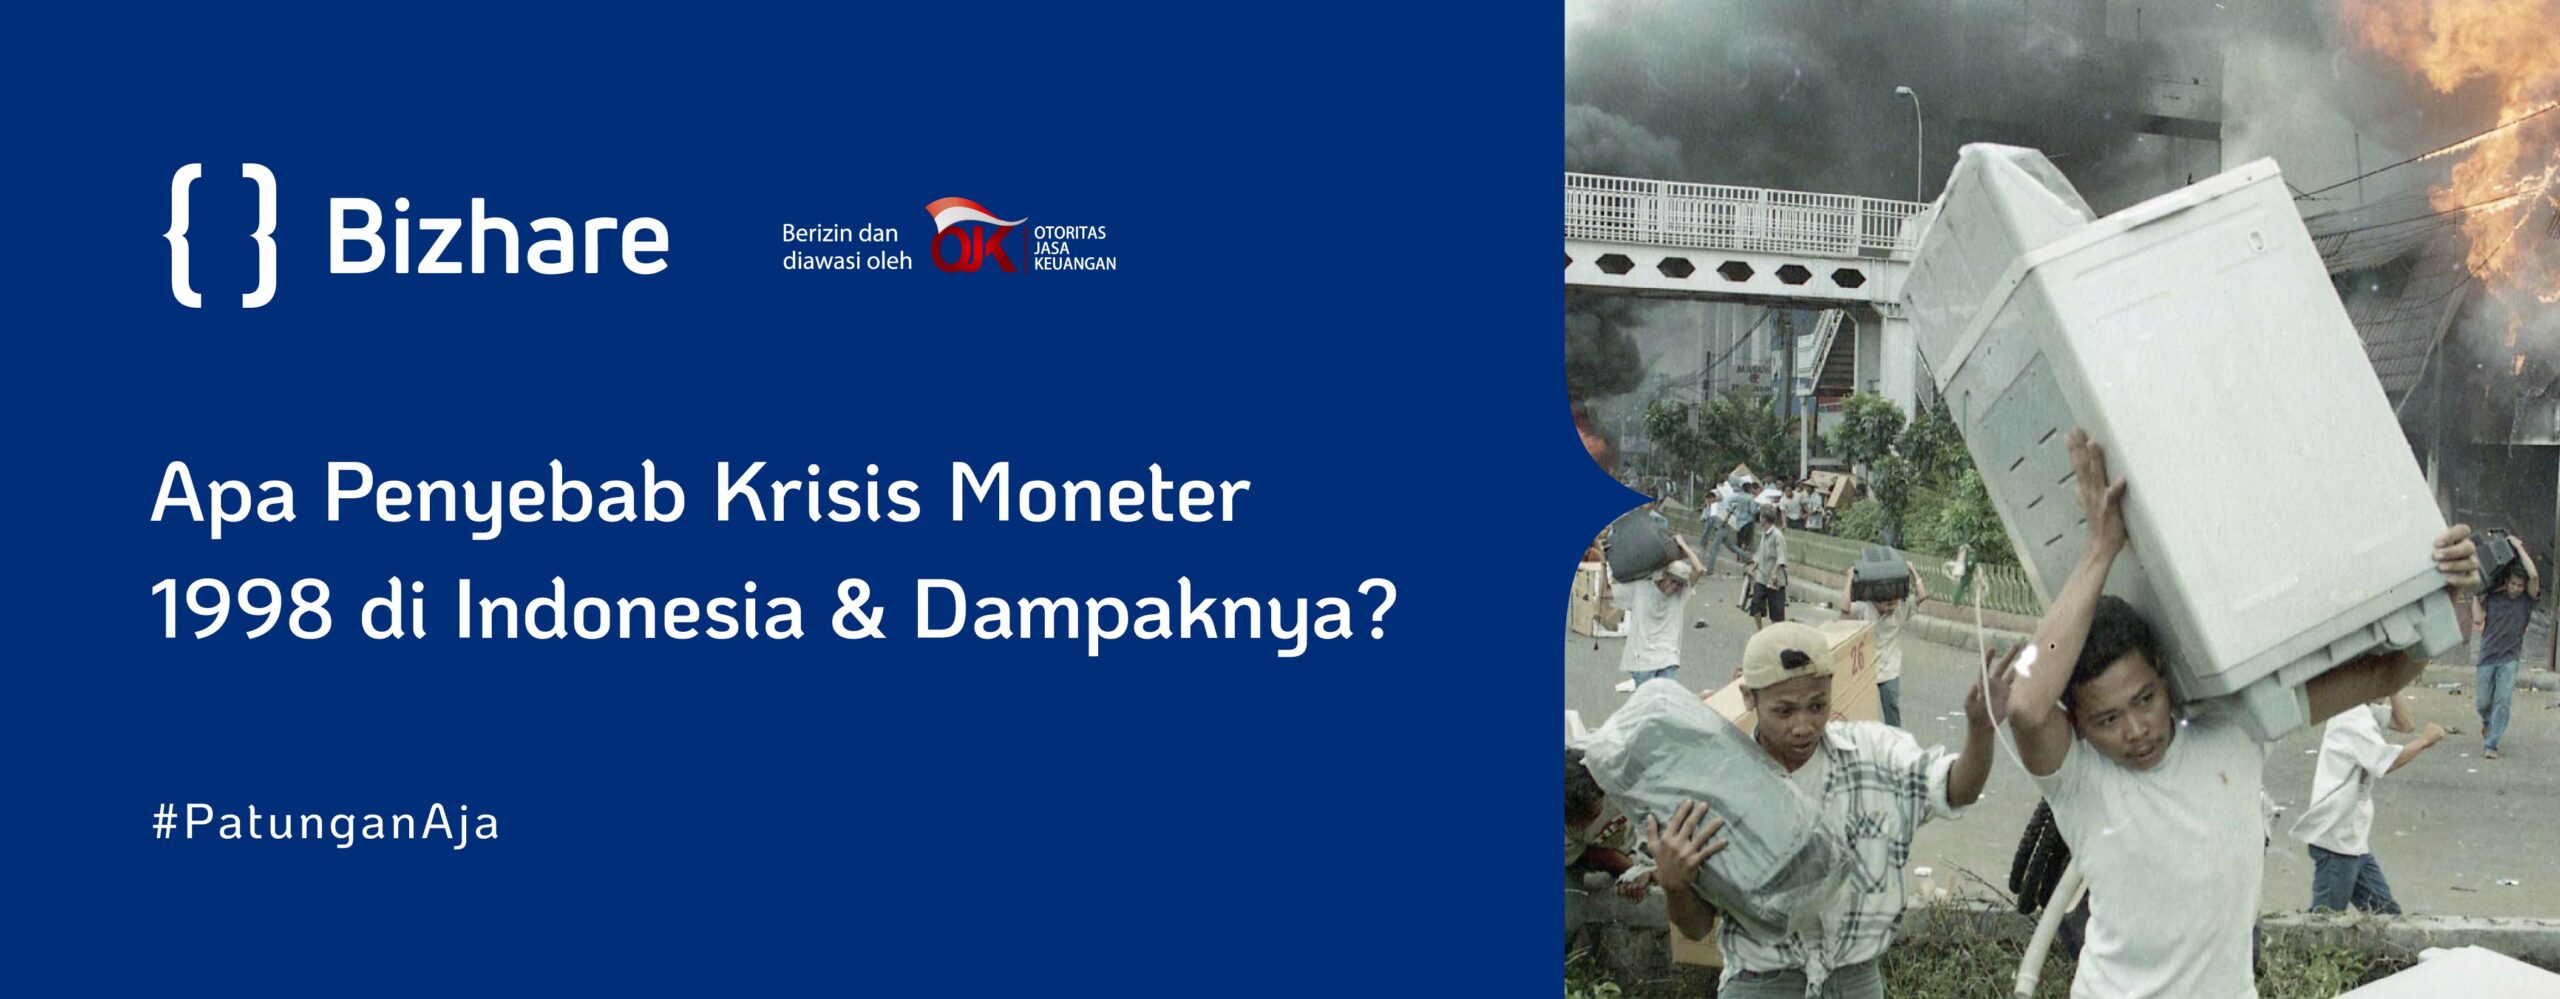 Apa Penyebab Krisis Moneter 1998 di Indonesia & Dampaknya?